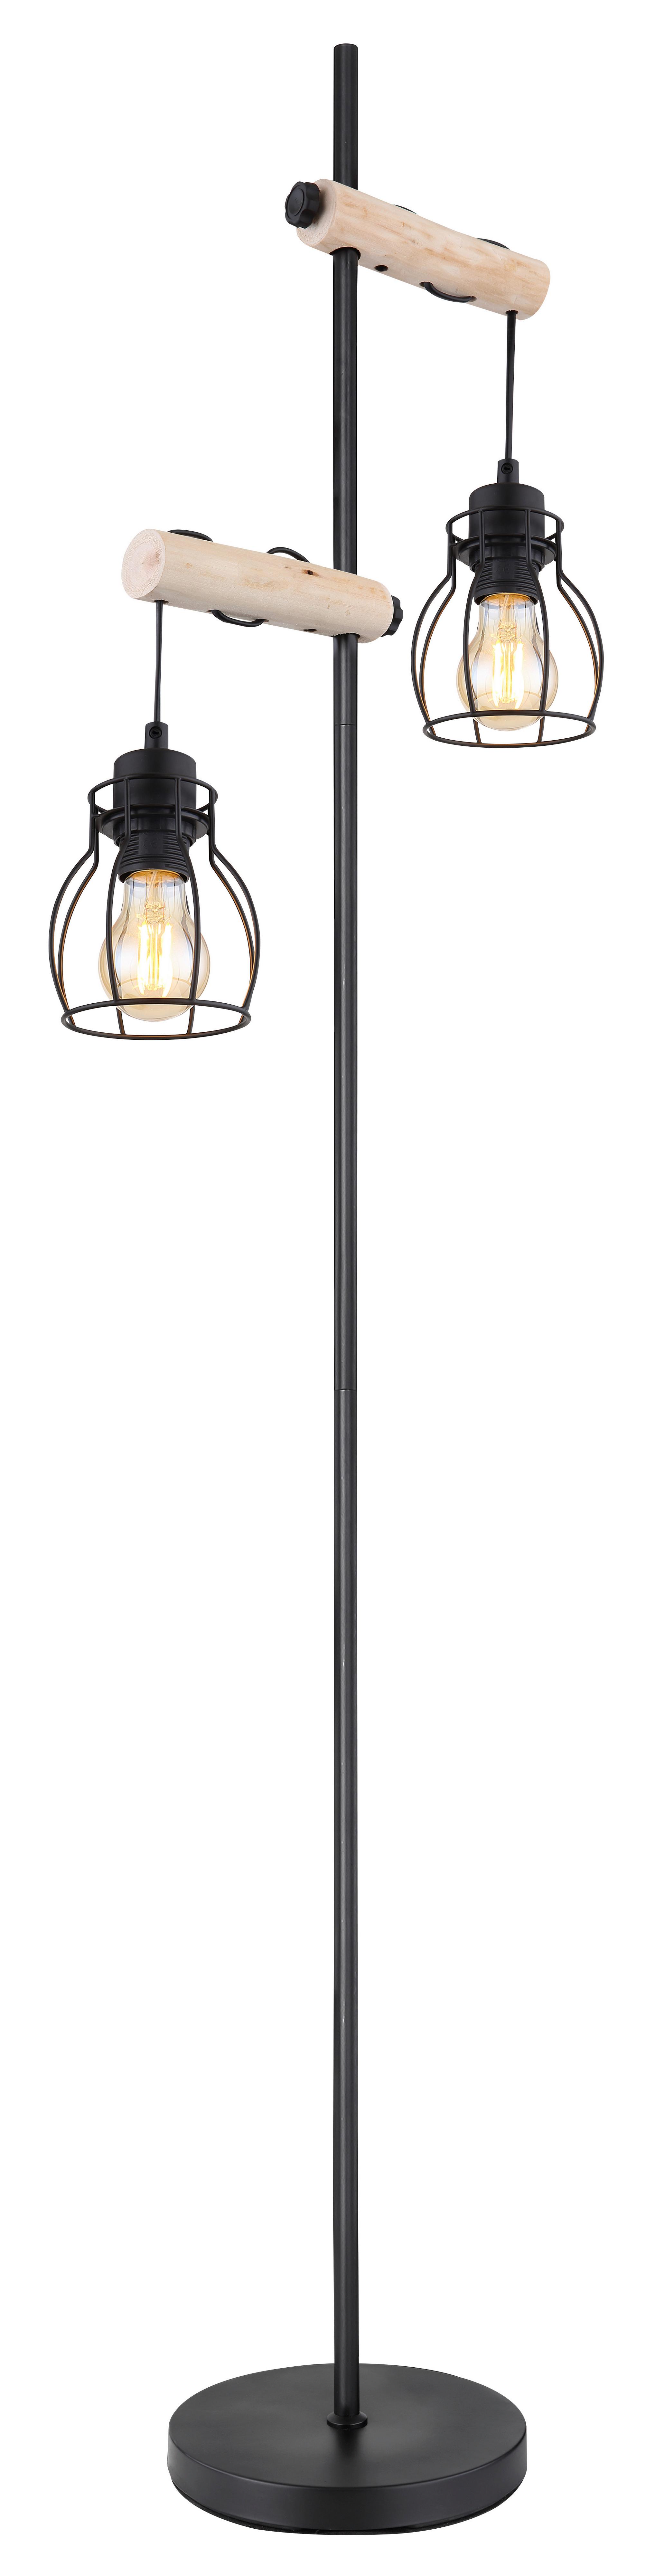 Stehlampe Holz Vision Schwarz 2 Leuchten, höhenverstellbar - Schwarz/Naturfarben, Basics, Holz/Metall (38,5/23/150cm) - Globo